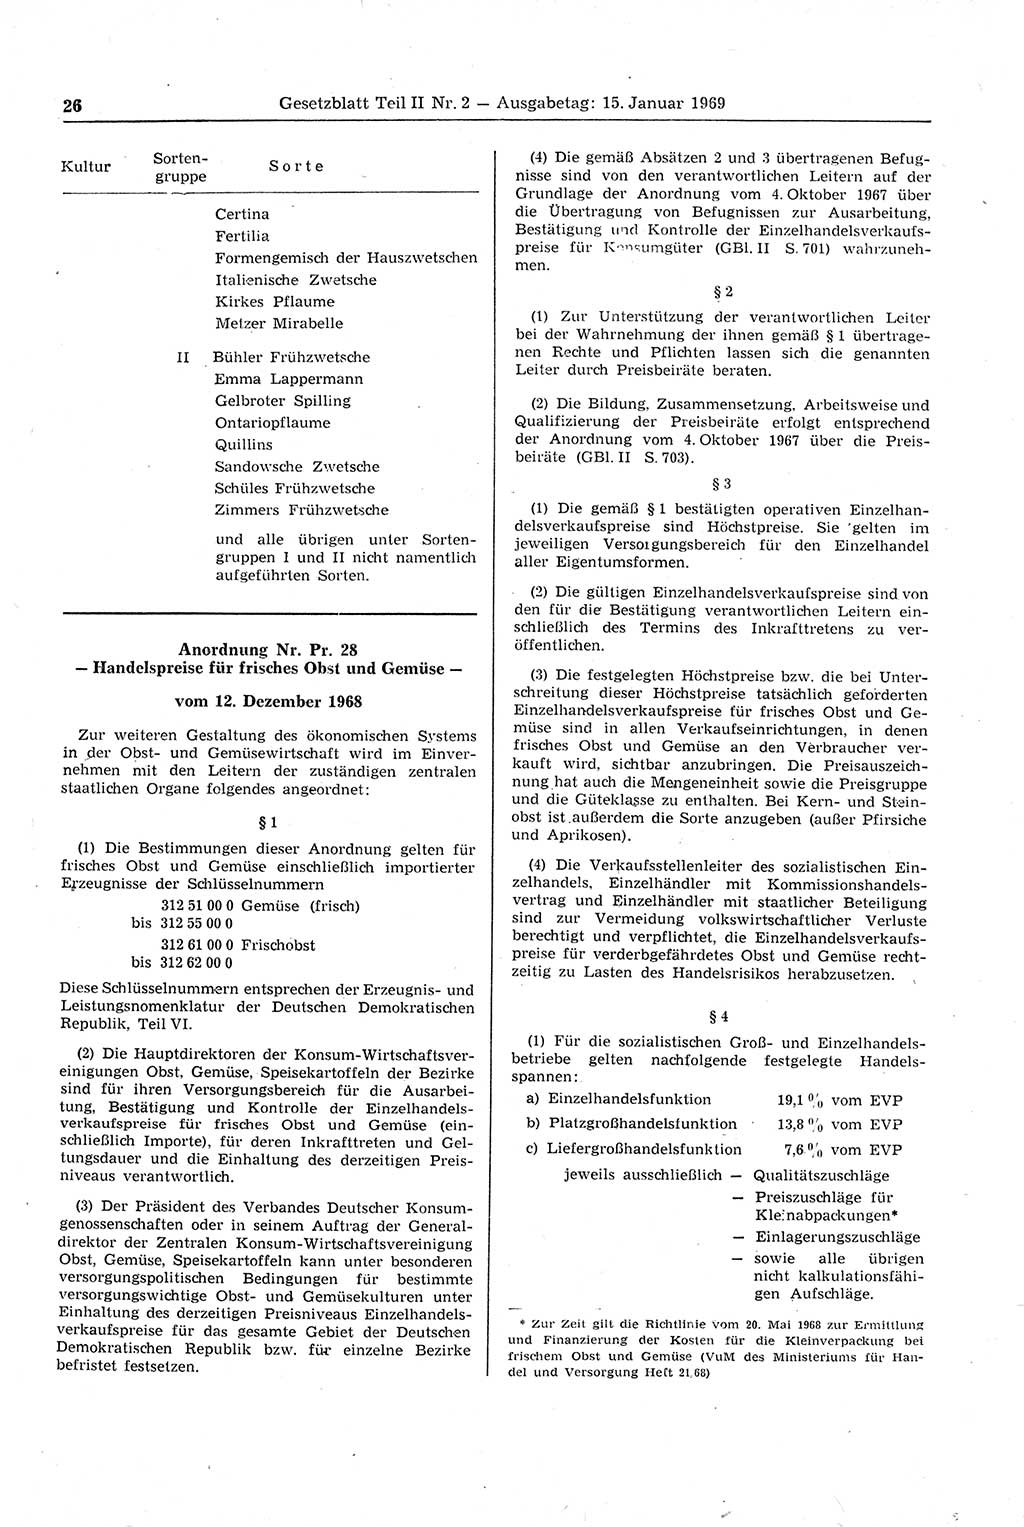 Gesetzblatt (GBl.) der Deutschen Demokratischen Republik (DDR) Teil ⅠⅠ 1969, Seite 26 (GBl. DDR ⅠⅠ 1969, S. 26)